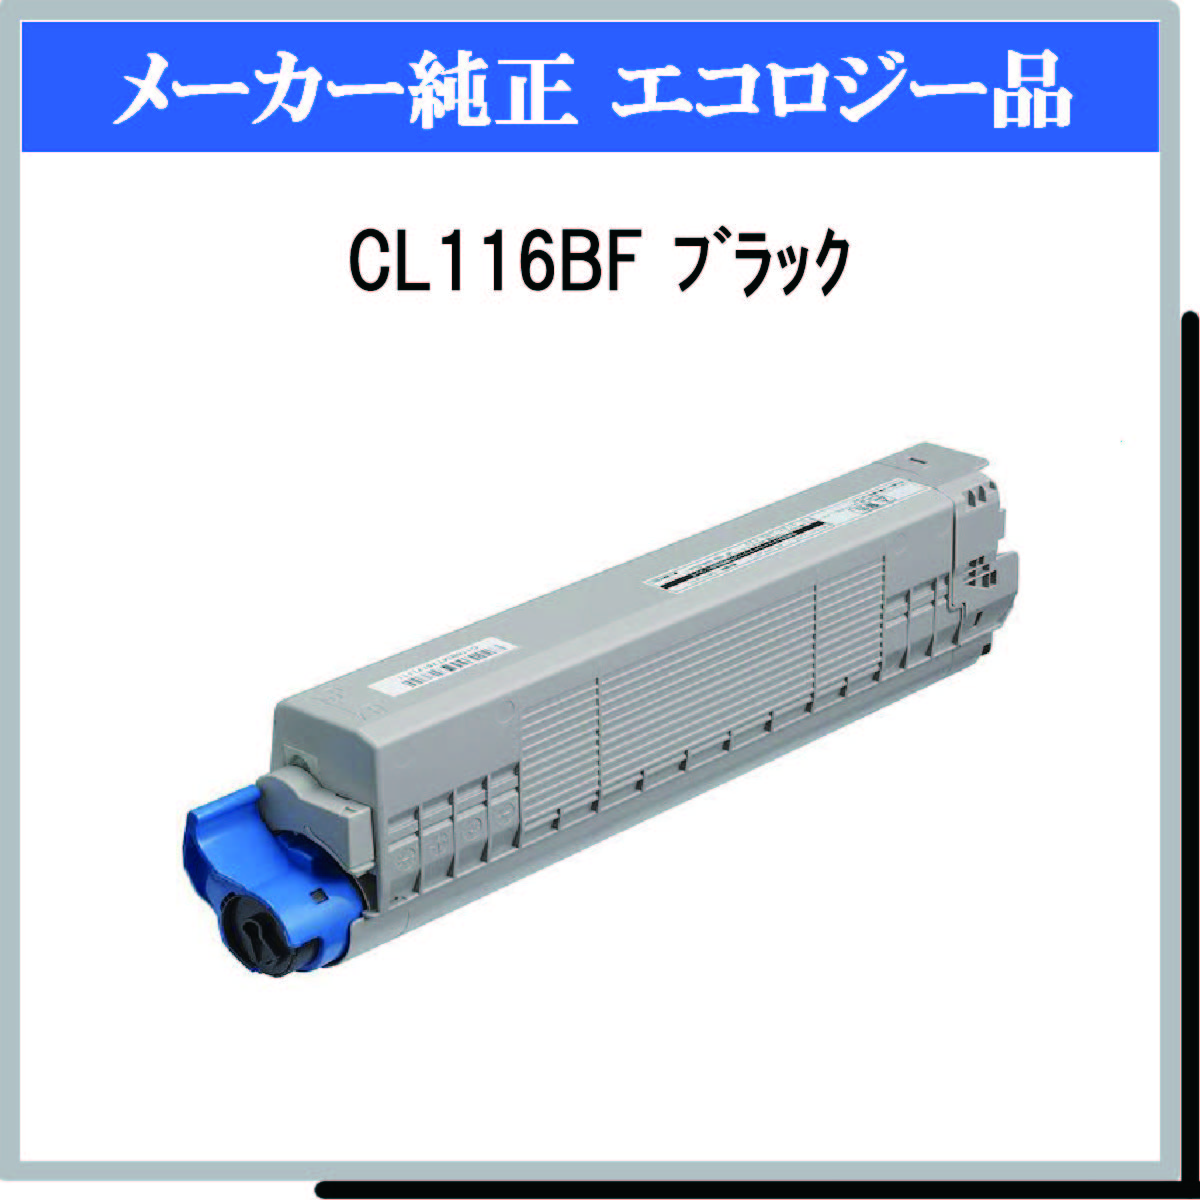 CL116BF ﾌﾞﾗｯｸ 環境共生ﾄﾅｰ - ウインドウを閉じる